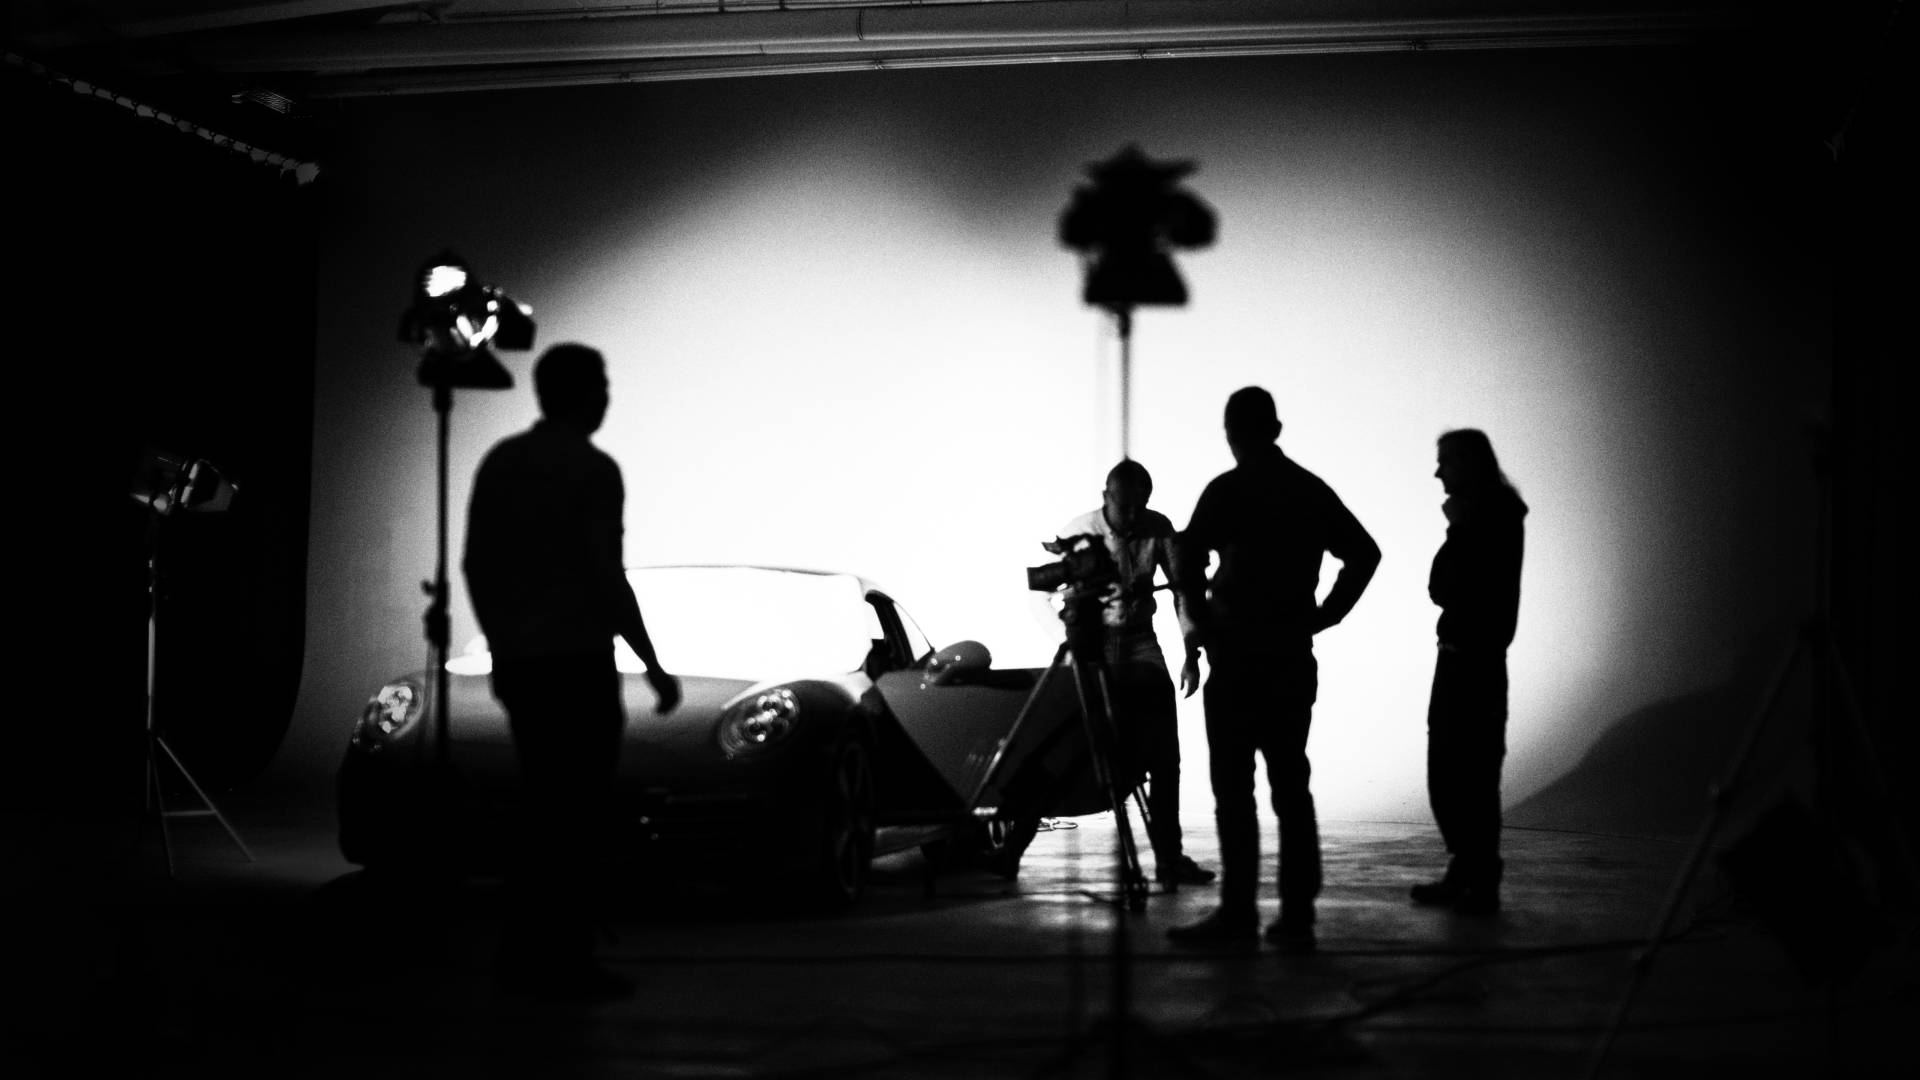 Impressionen vom Dreh mit Porsche und Kamerateam